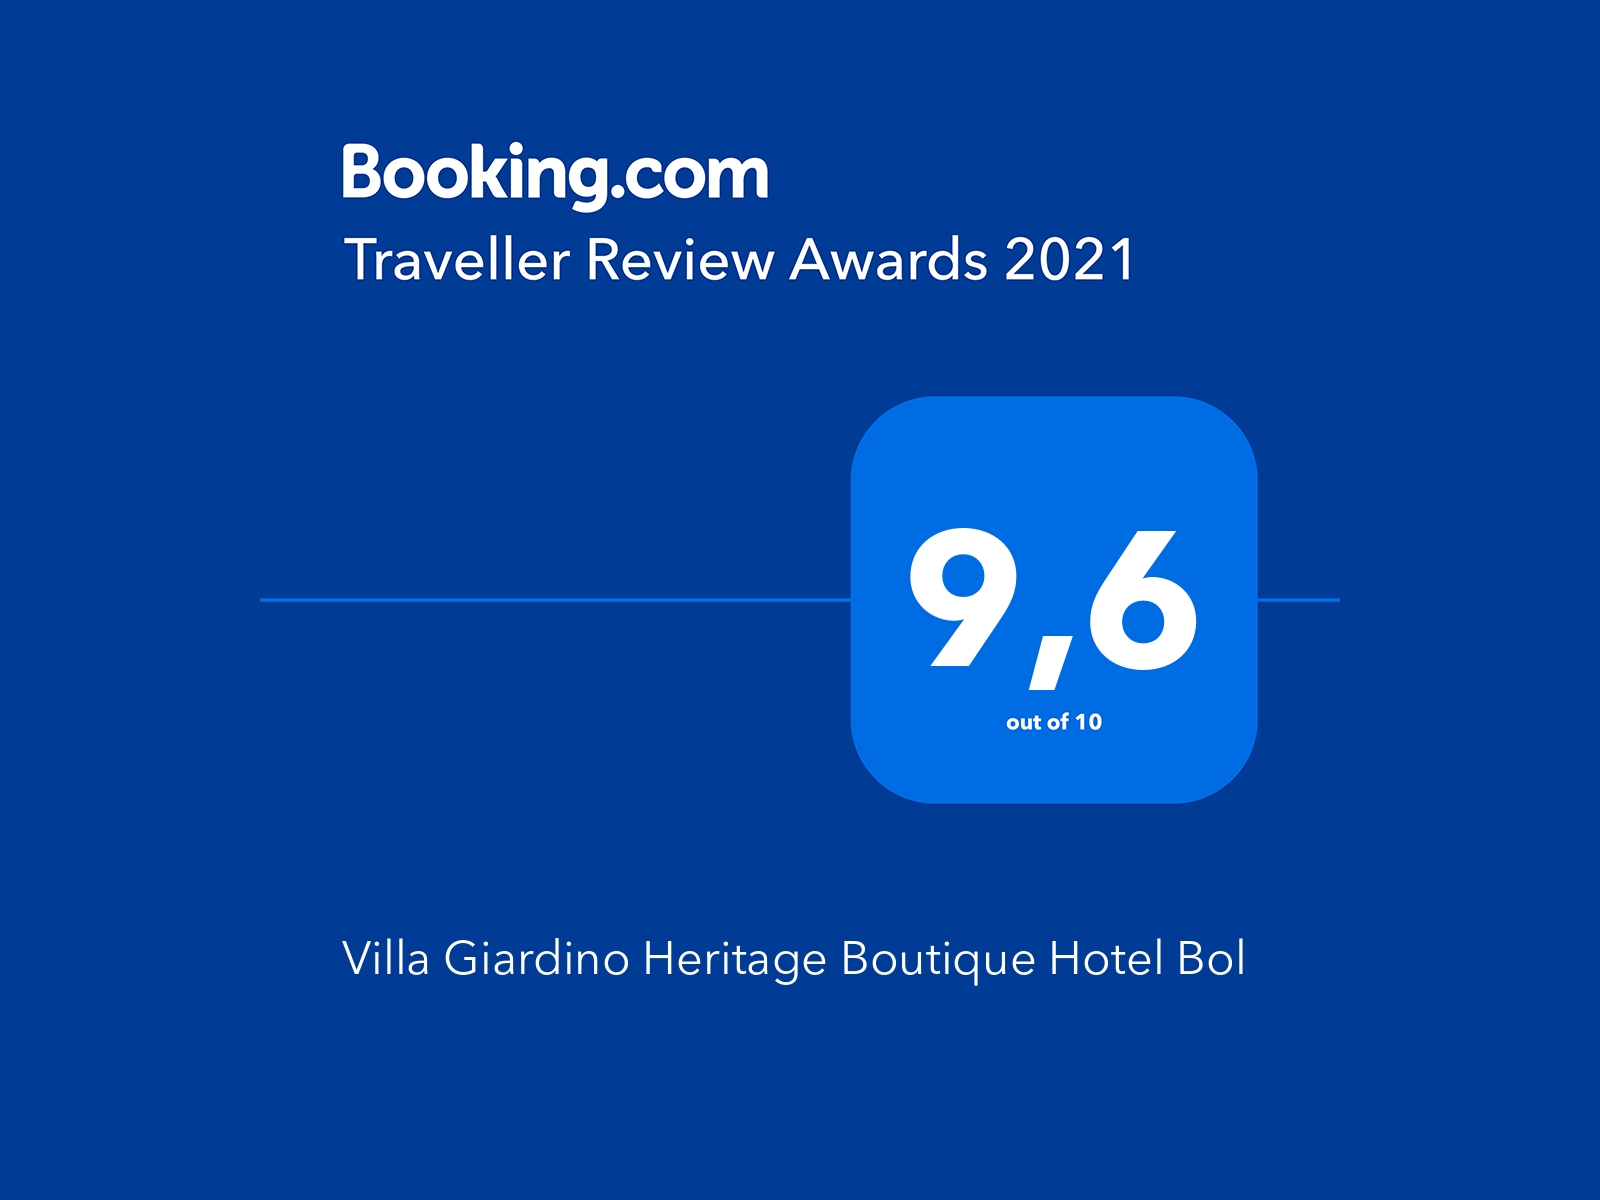 Villa Giardino wins the Traveller Review Award!